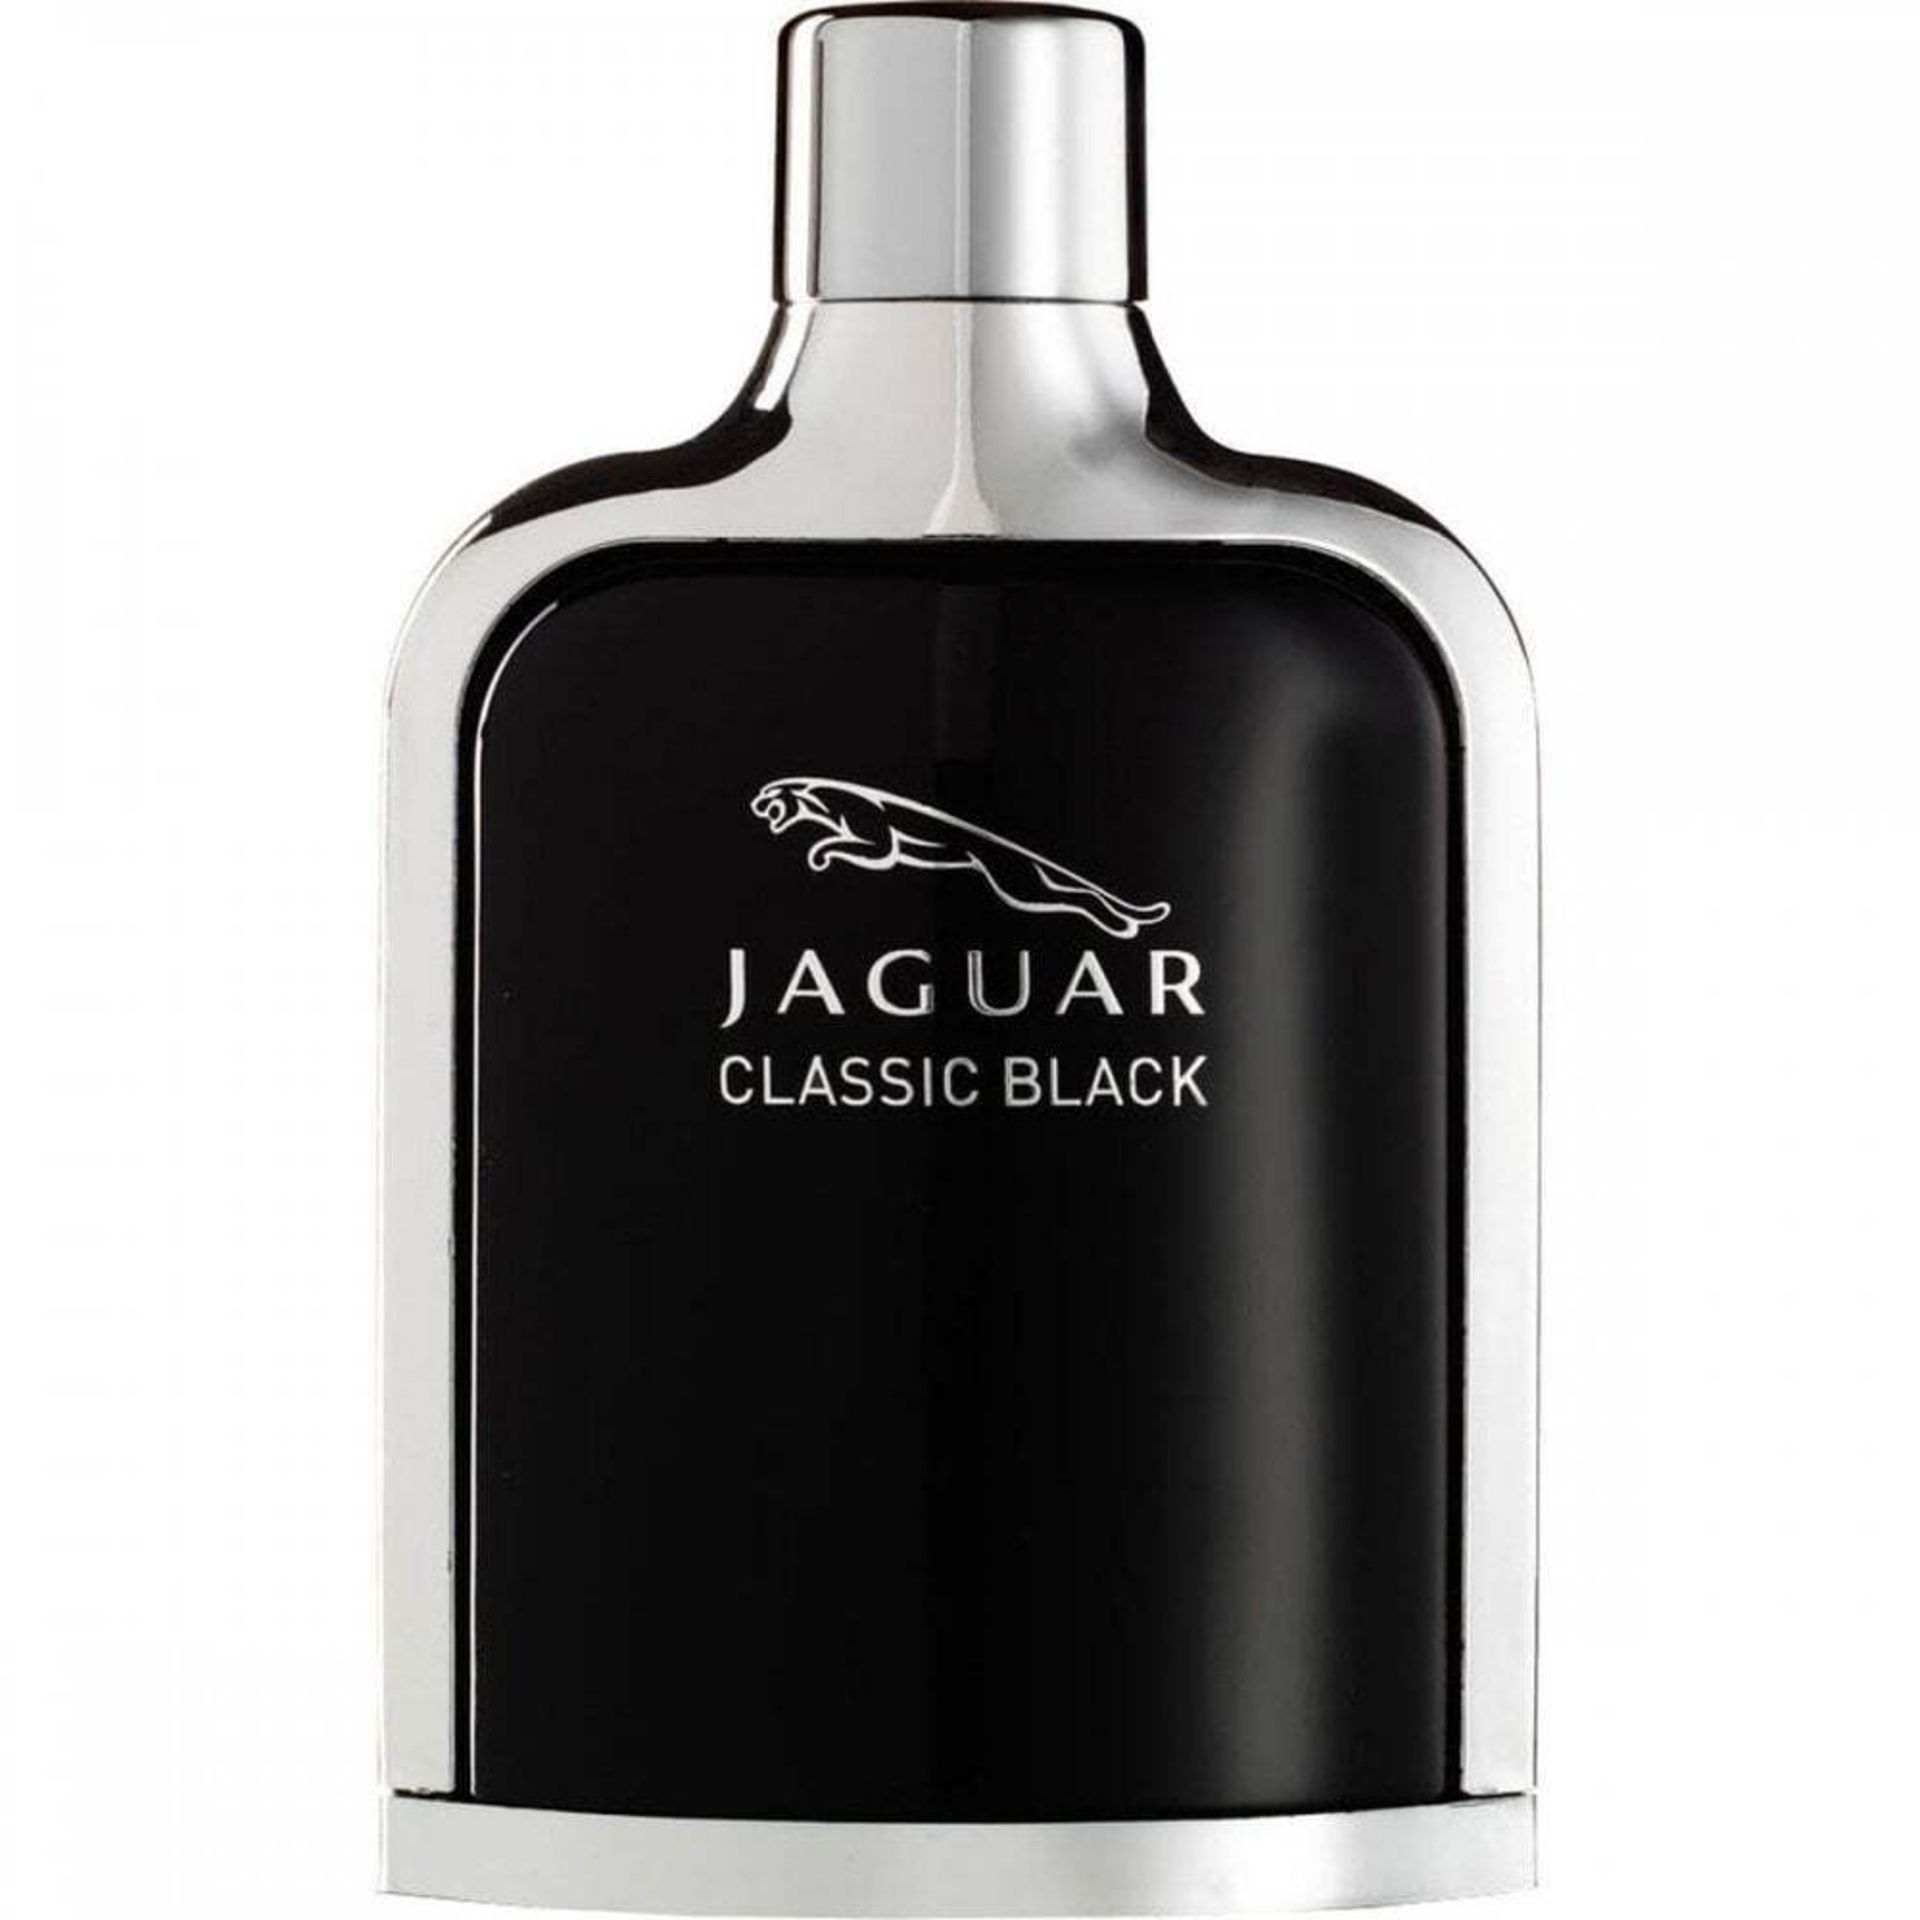 Jaguar Classic Black Eau de Toilette 100ml Spray - Image 5 of 5